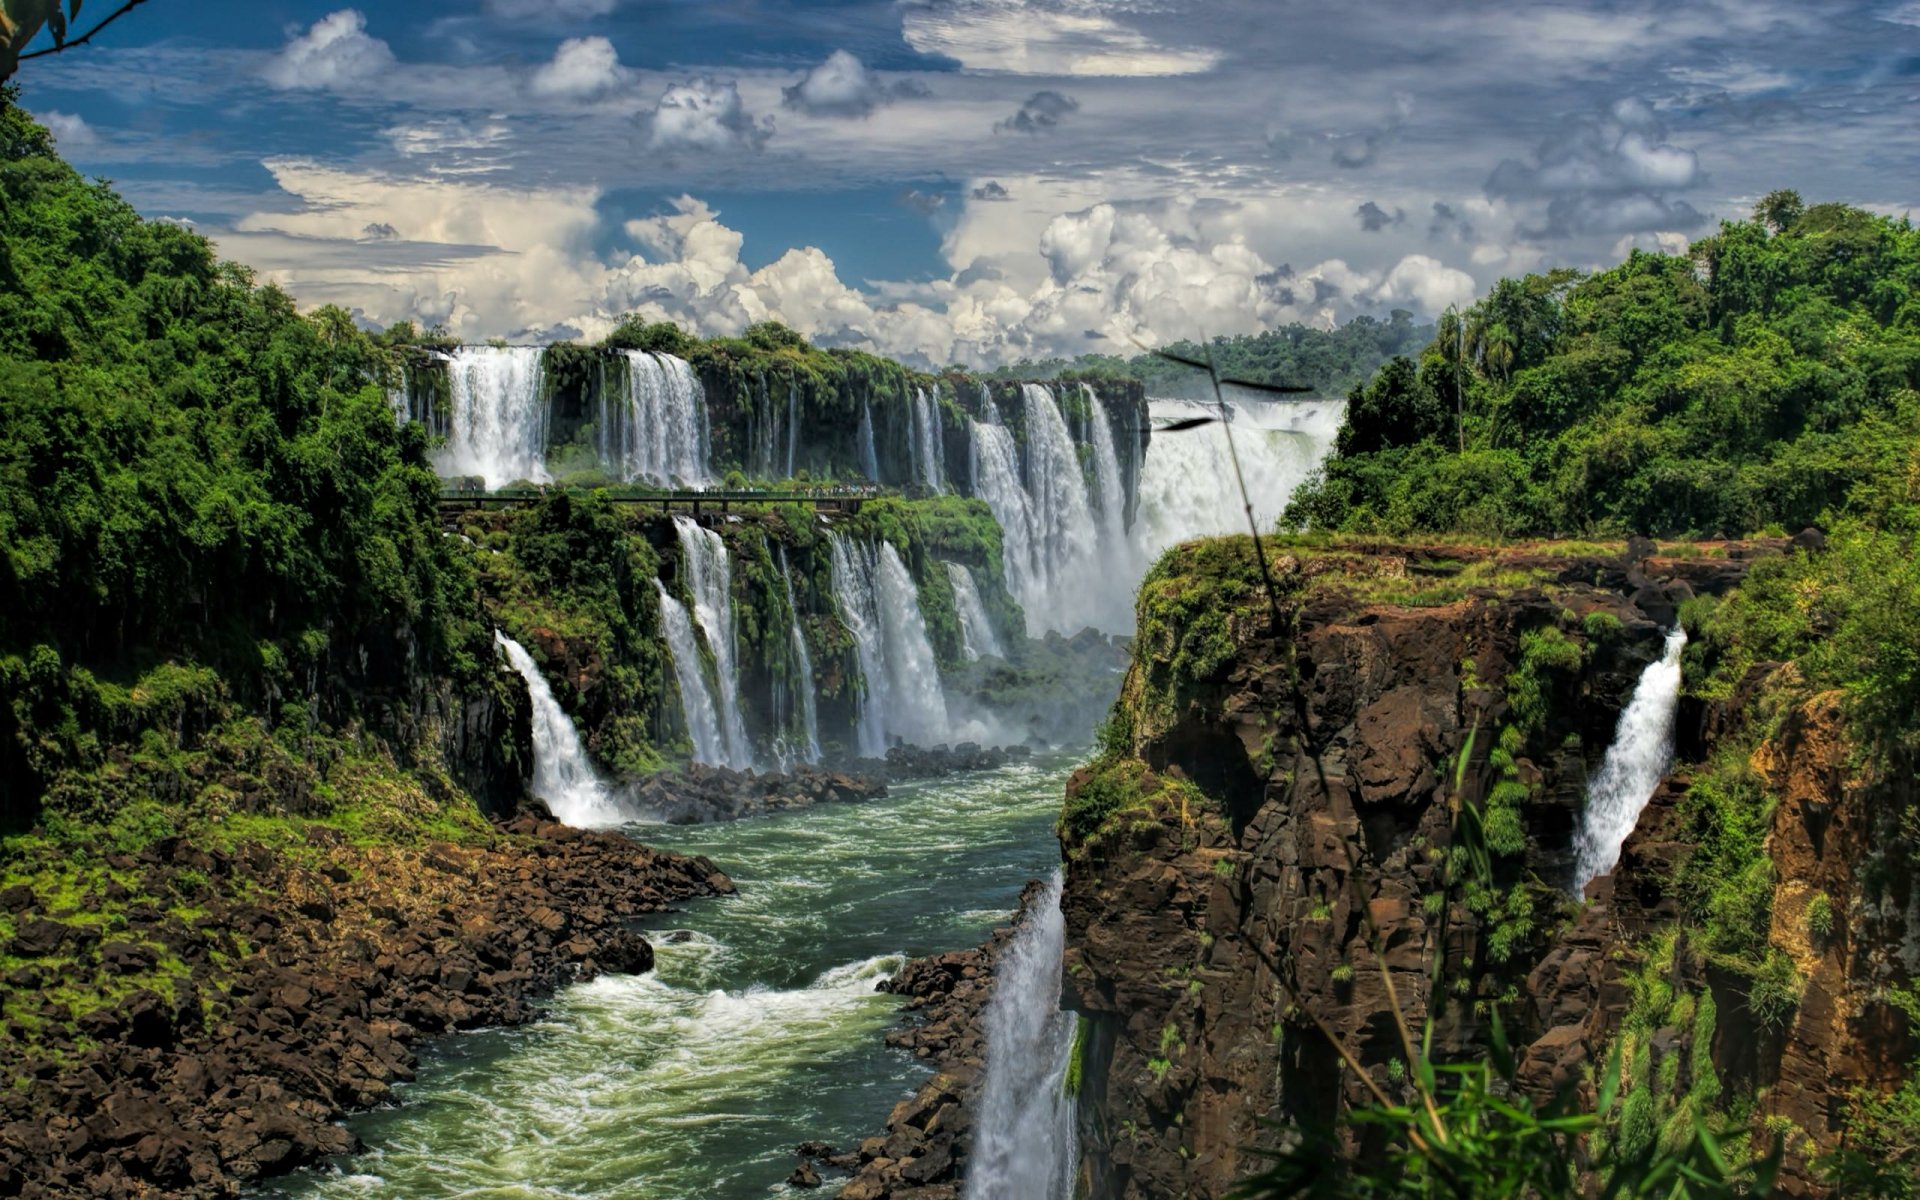 Iguazu Falls Wallpaper Full Hd